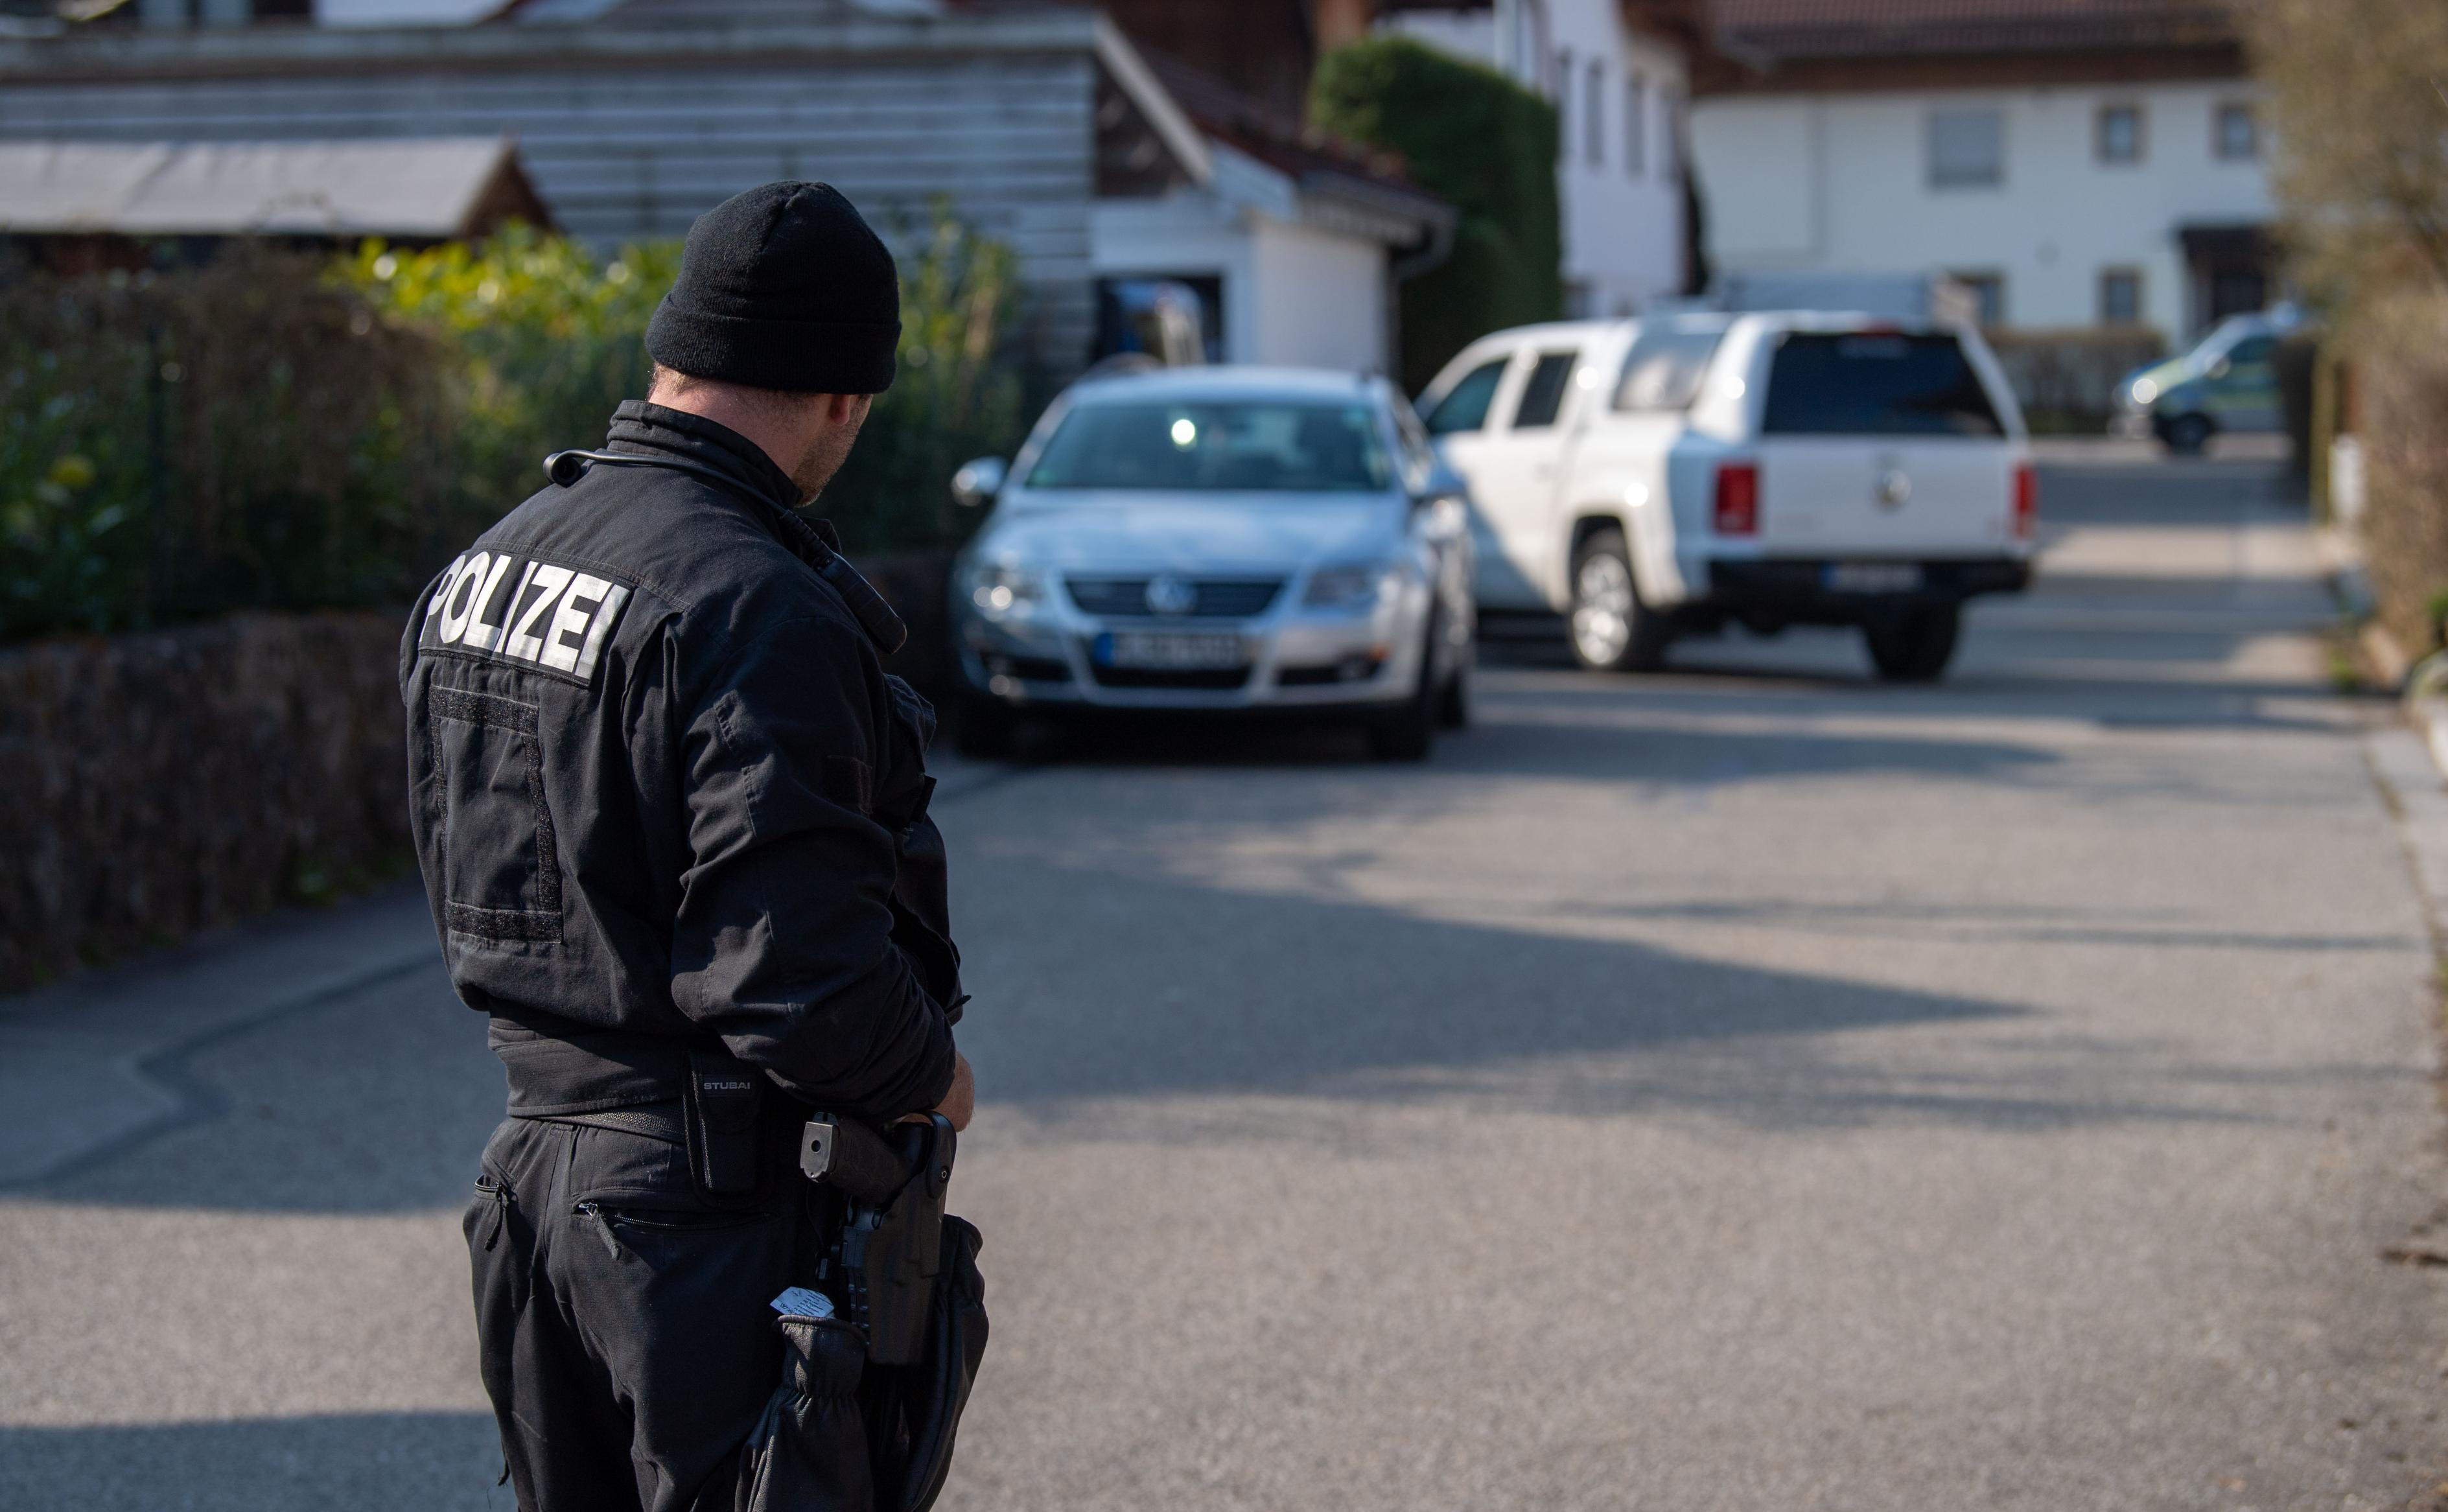 Imagen de un agente de la Policía en Alemania (Foto: Europa Press – Lino Mirgeler/DPA).